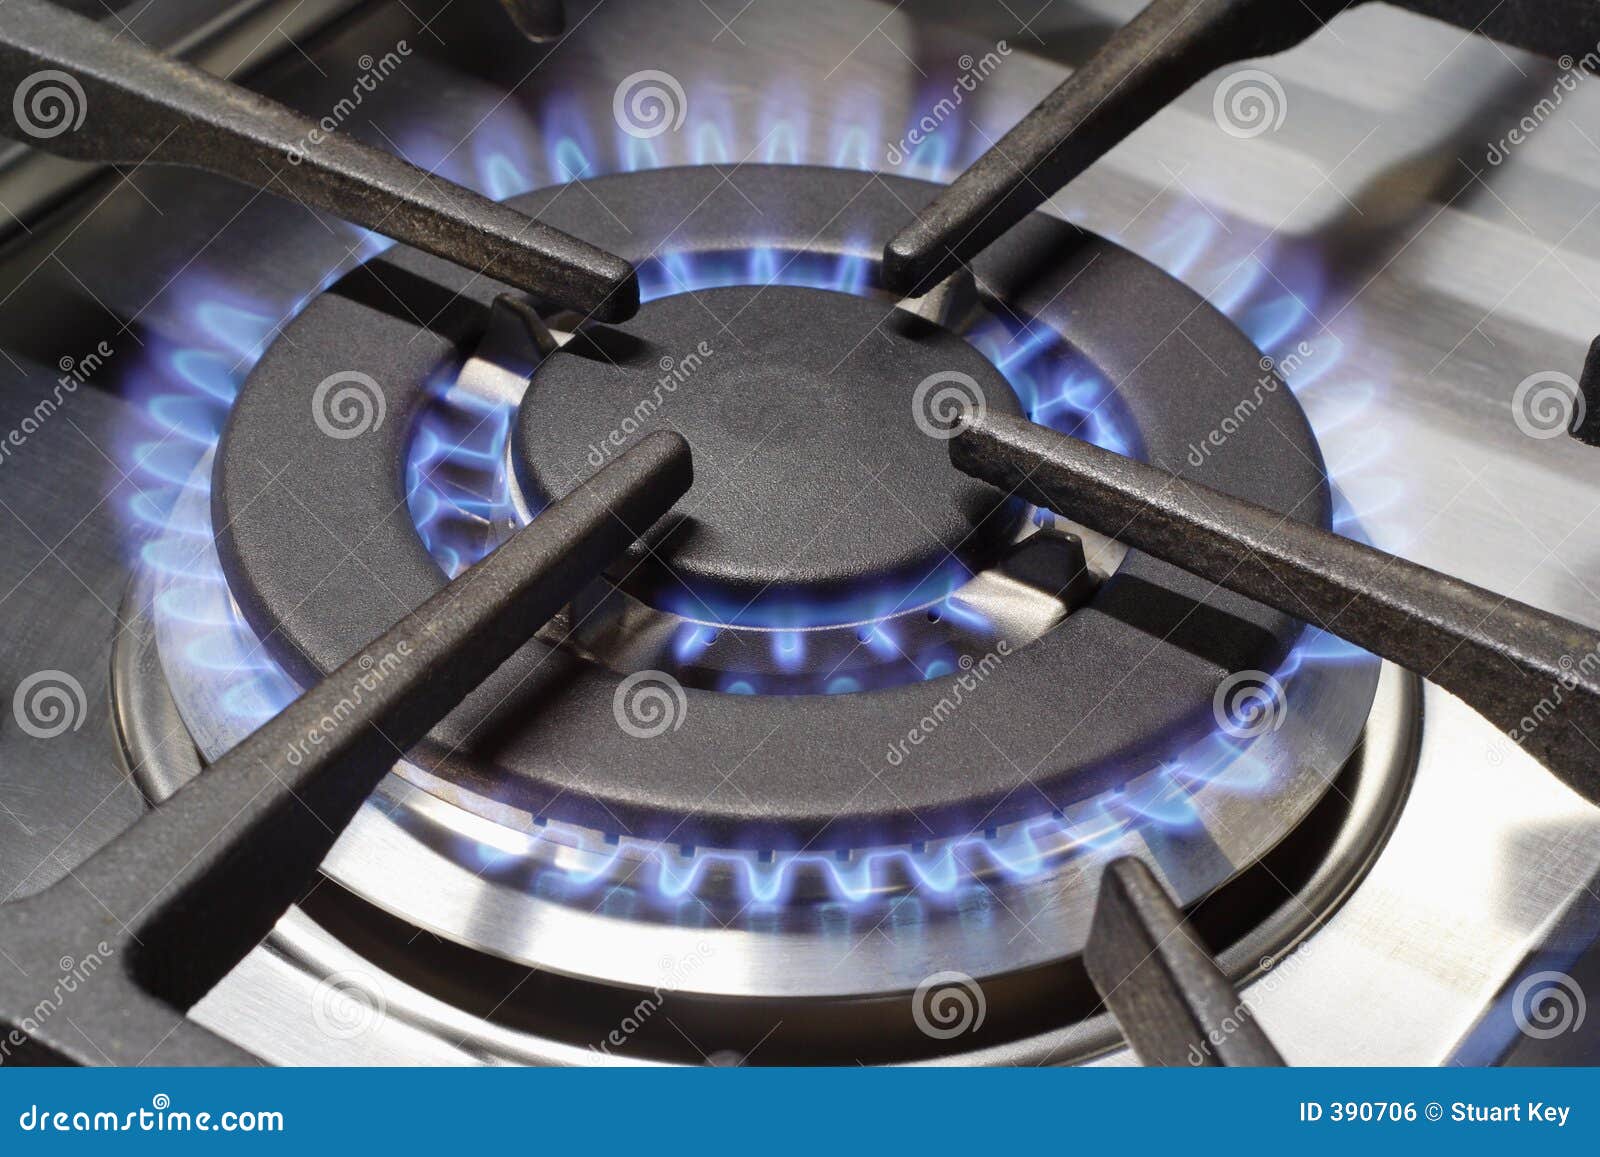 gas cooker burner